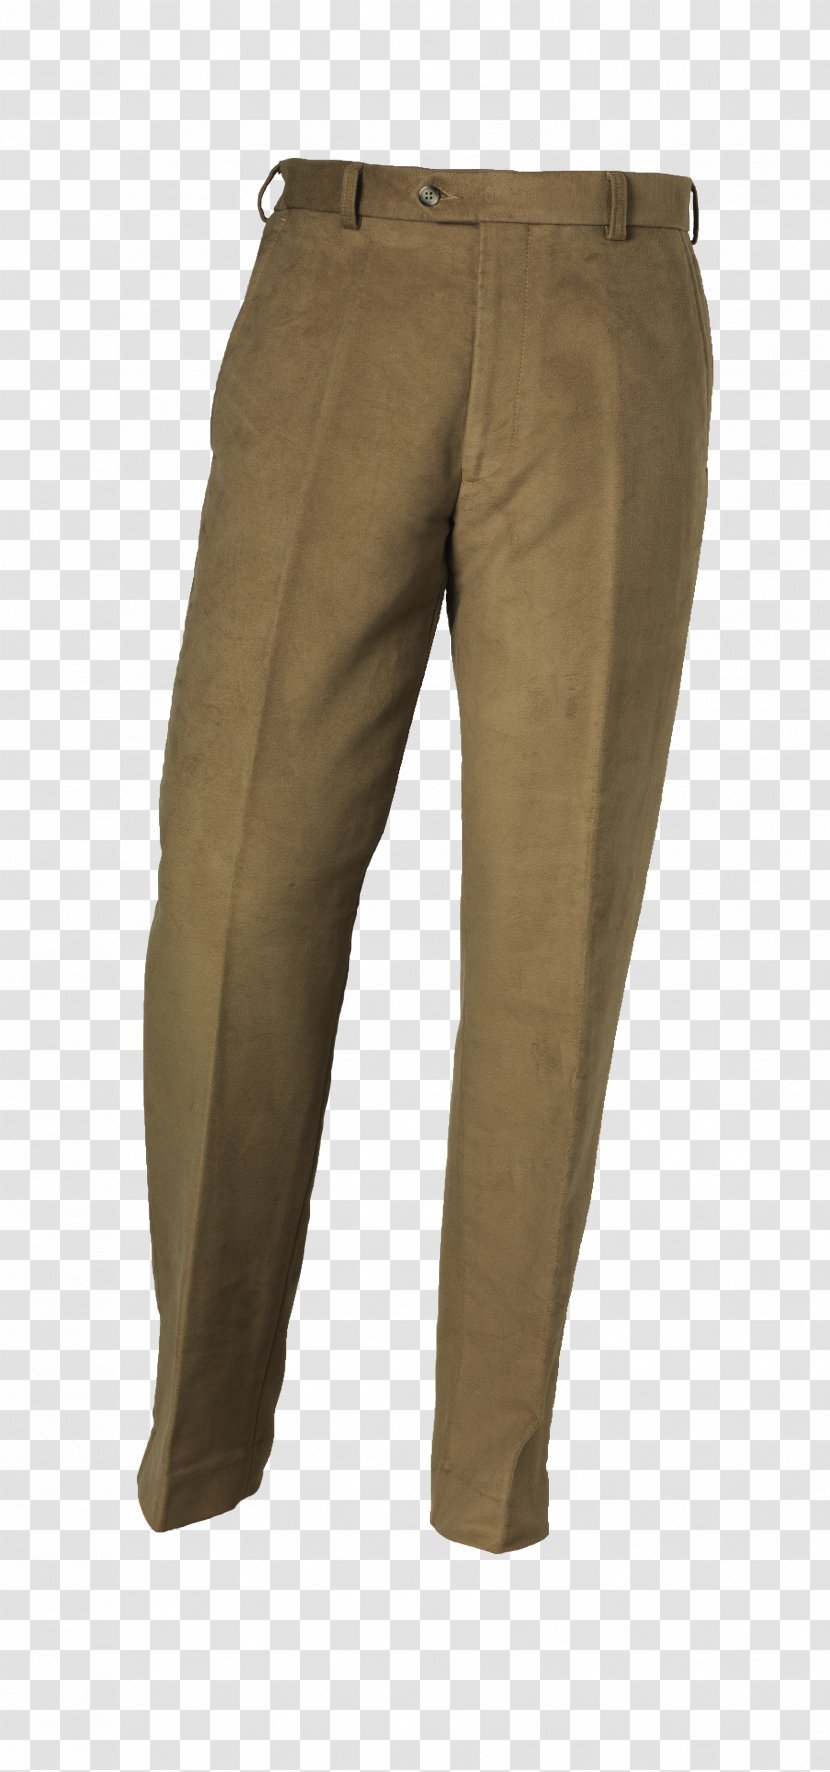 Moleskin Pants Military Textile Long Underwear Transparent PNG